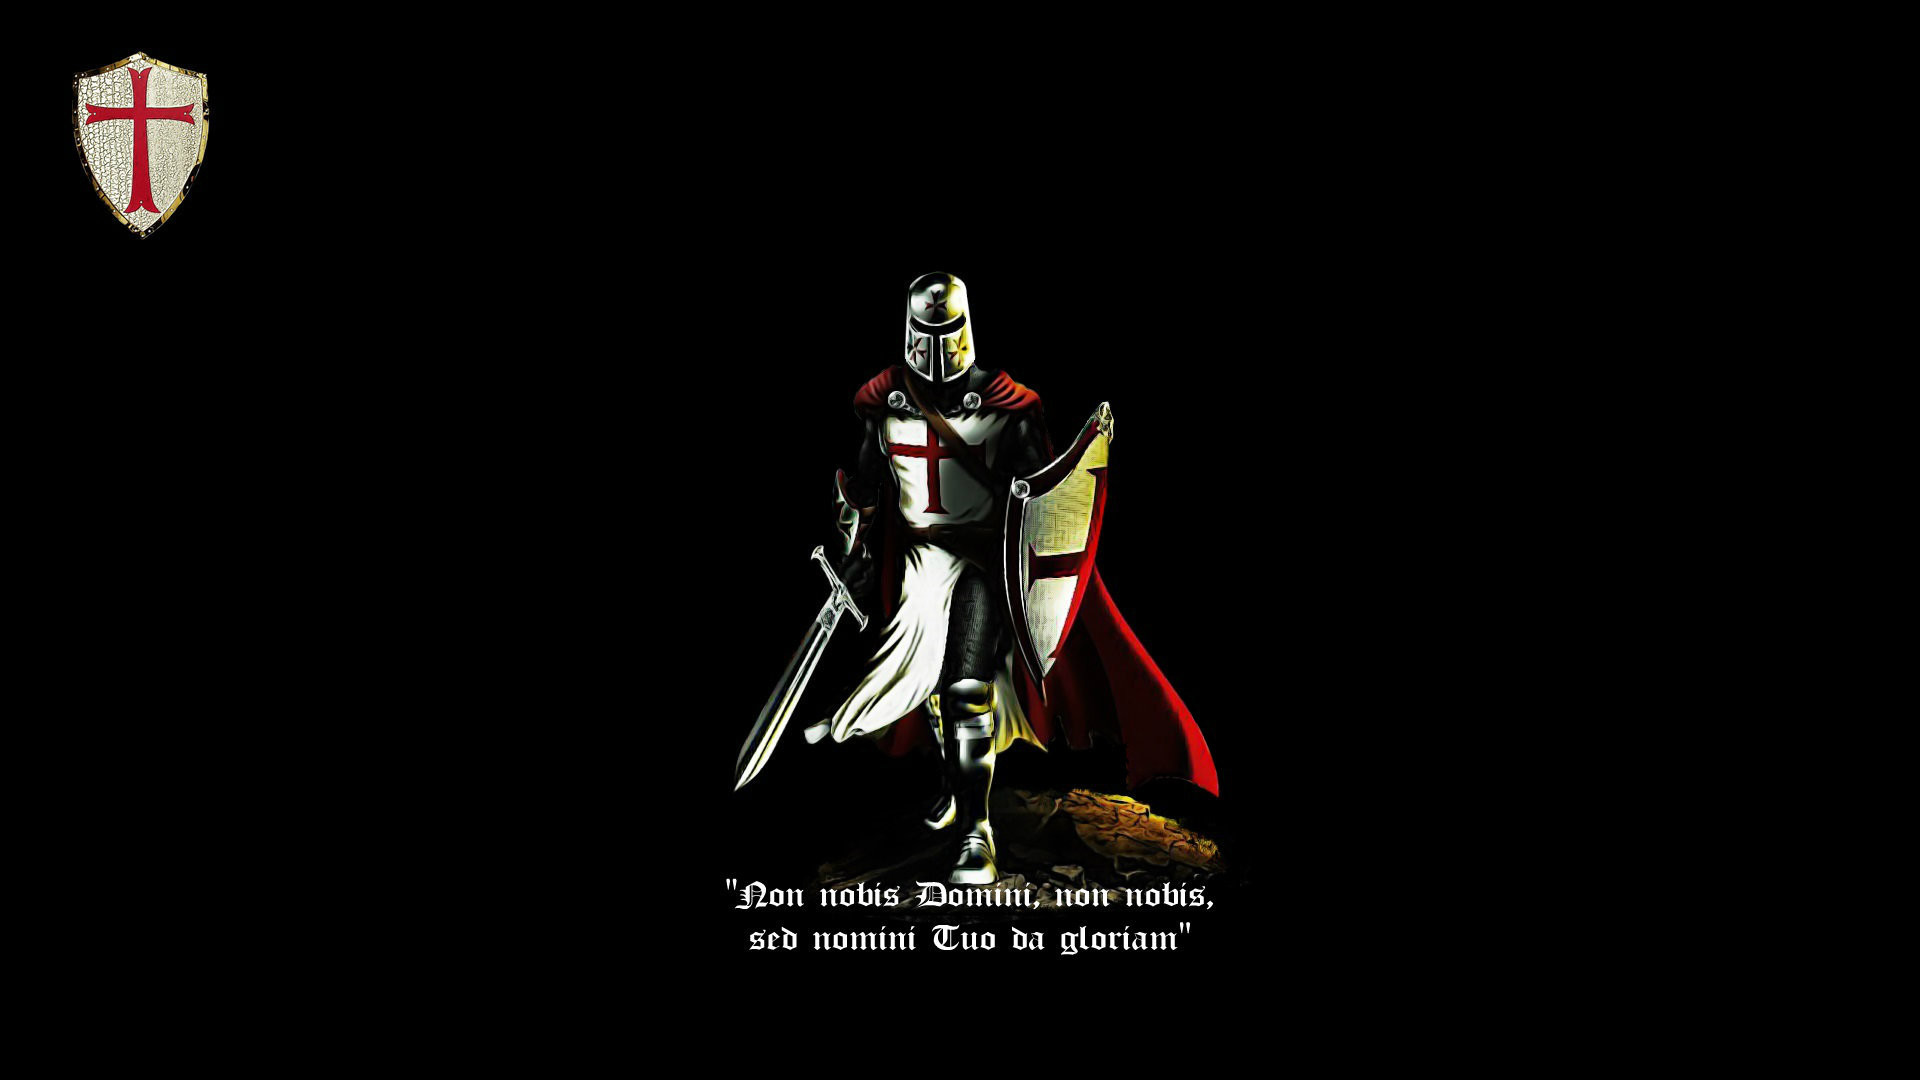 1920x1080 Knight, cross, knight templar, latin, crusader, cattolic, black, red